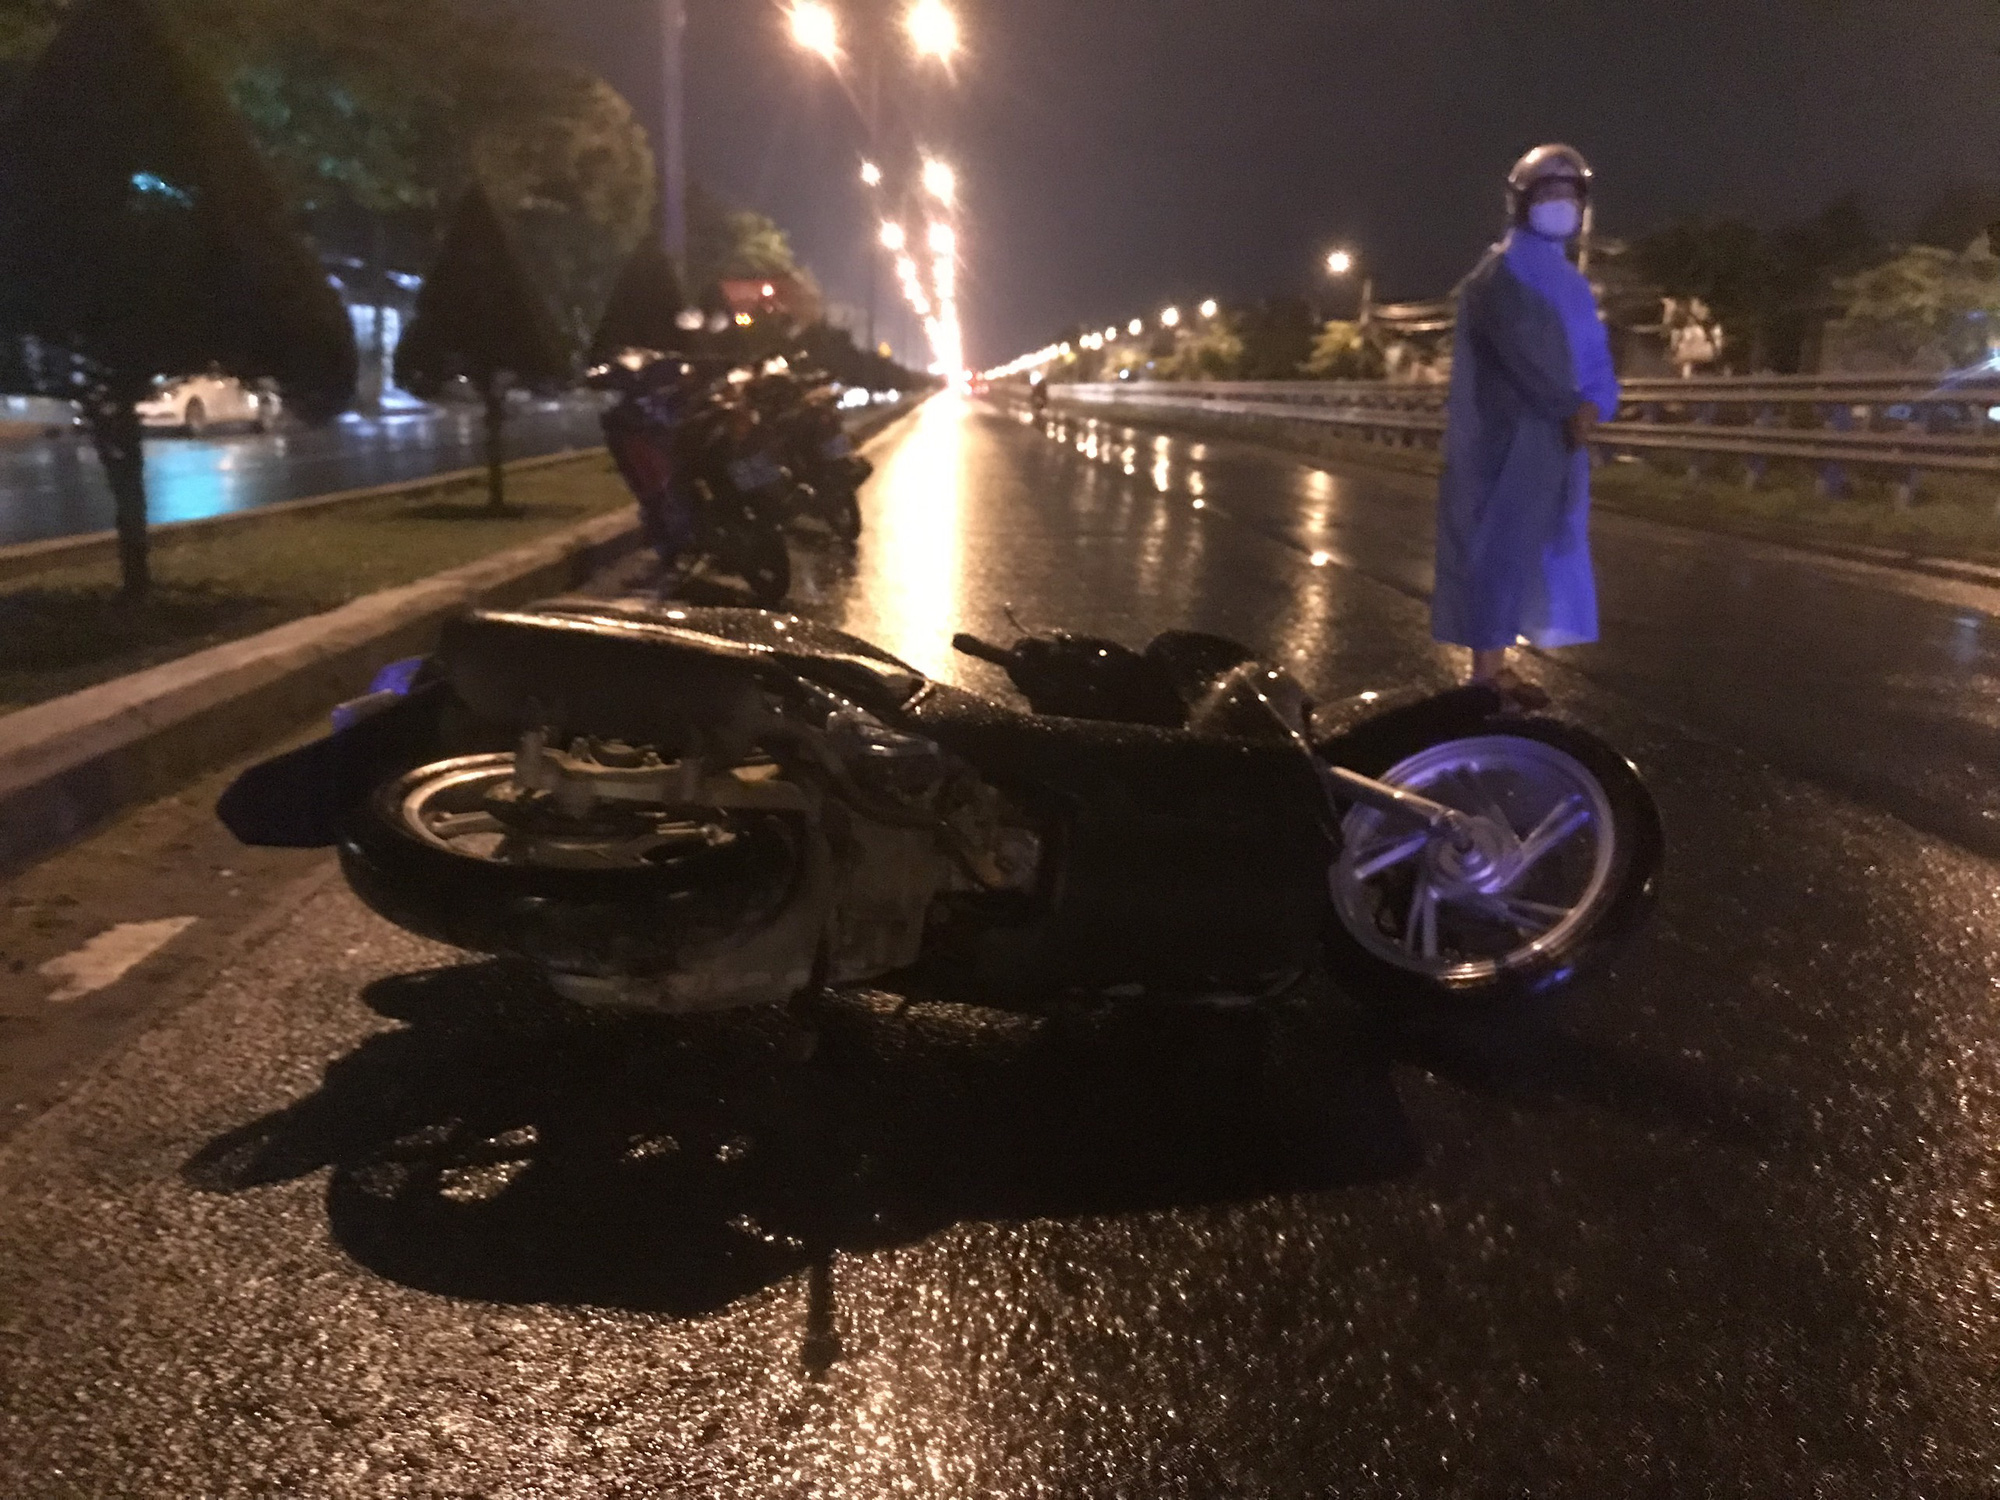 Không ai muốn có một tai nạn xe máy, nhưng bạn hãy xem bức ảnh đêm mưa với tai nạn xe máy này. Hợp với bầu không khí, ảnh giúp bạn thấy được tác động của mưa và tai nạn đến con người.